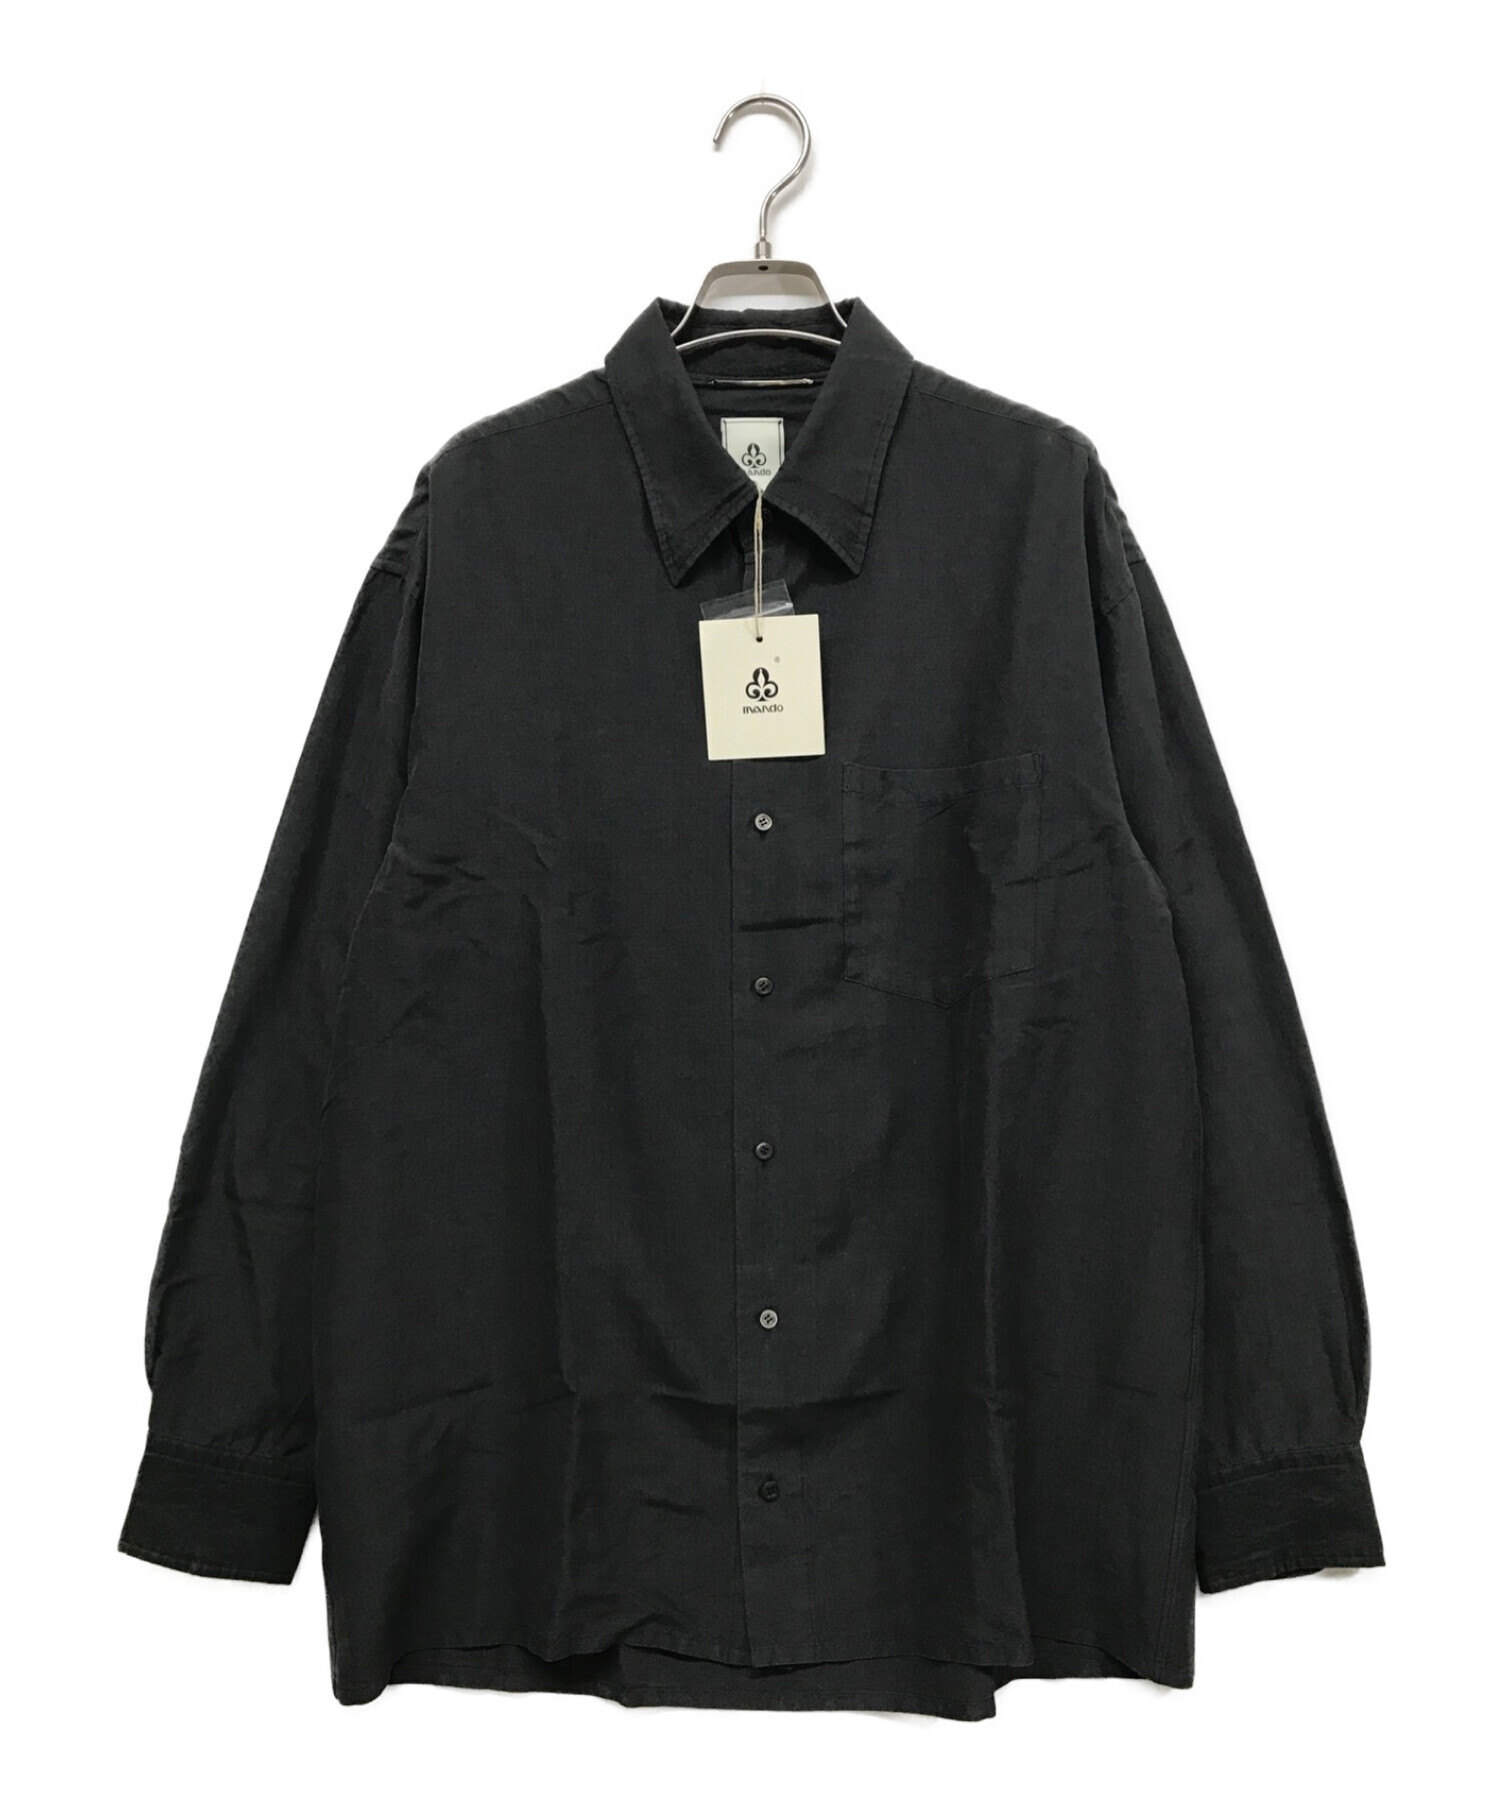 MANDO (マンドー) 製品染めウールシルクシャツ 21395-003 ブラック サイズ:SIZE 2